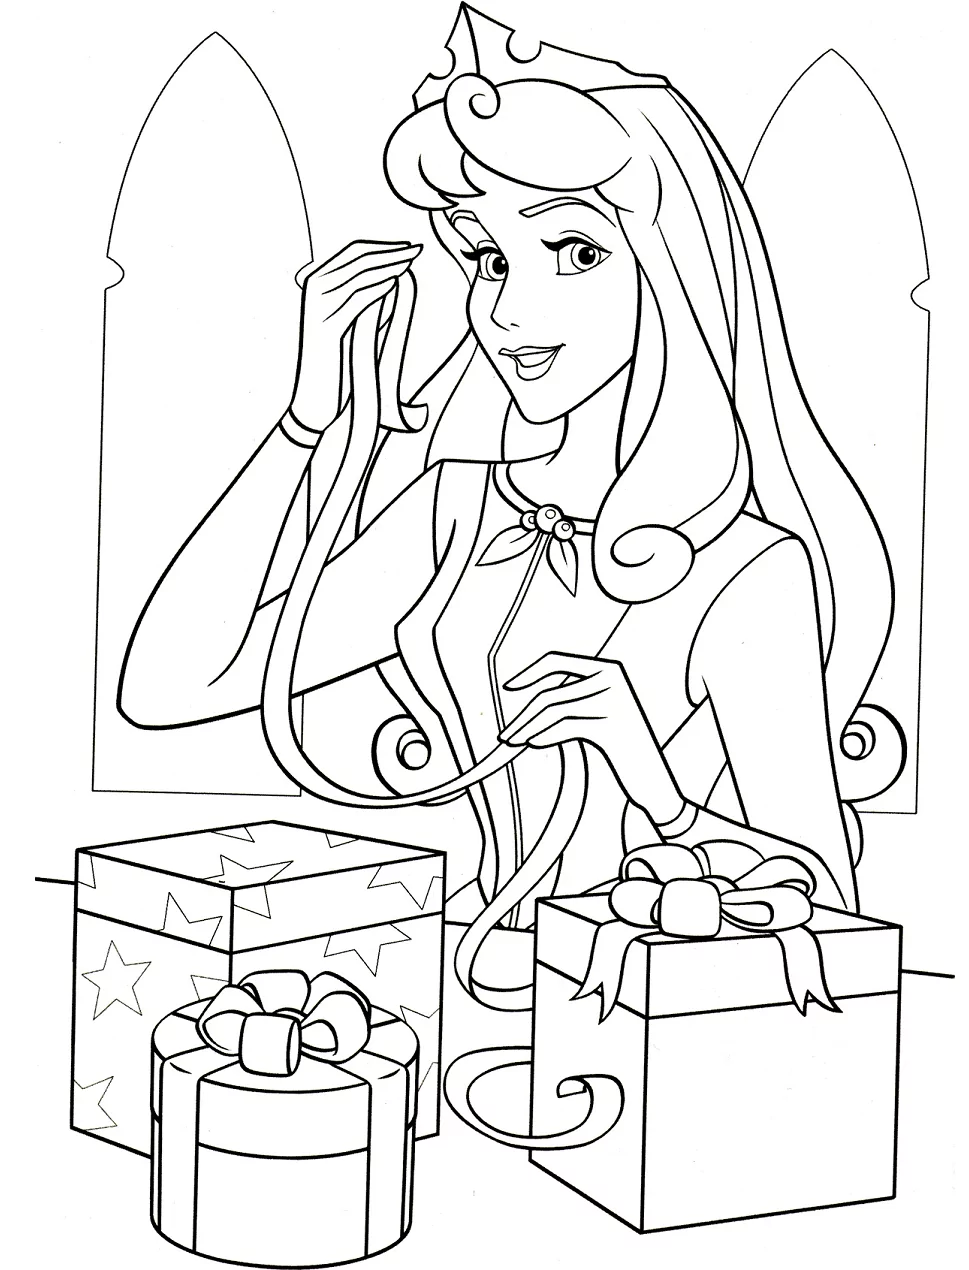 Aurora mit Geschenkboxen